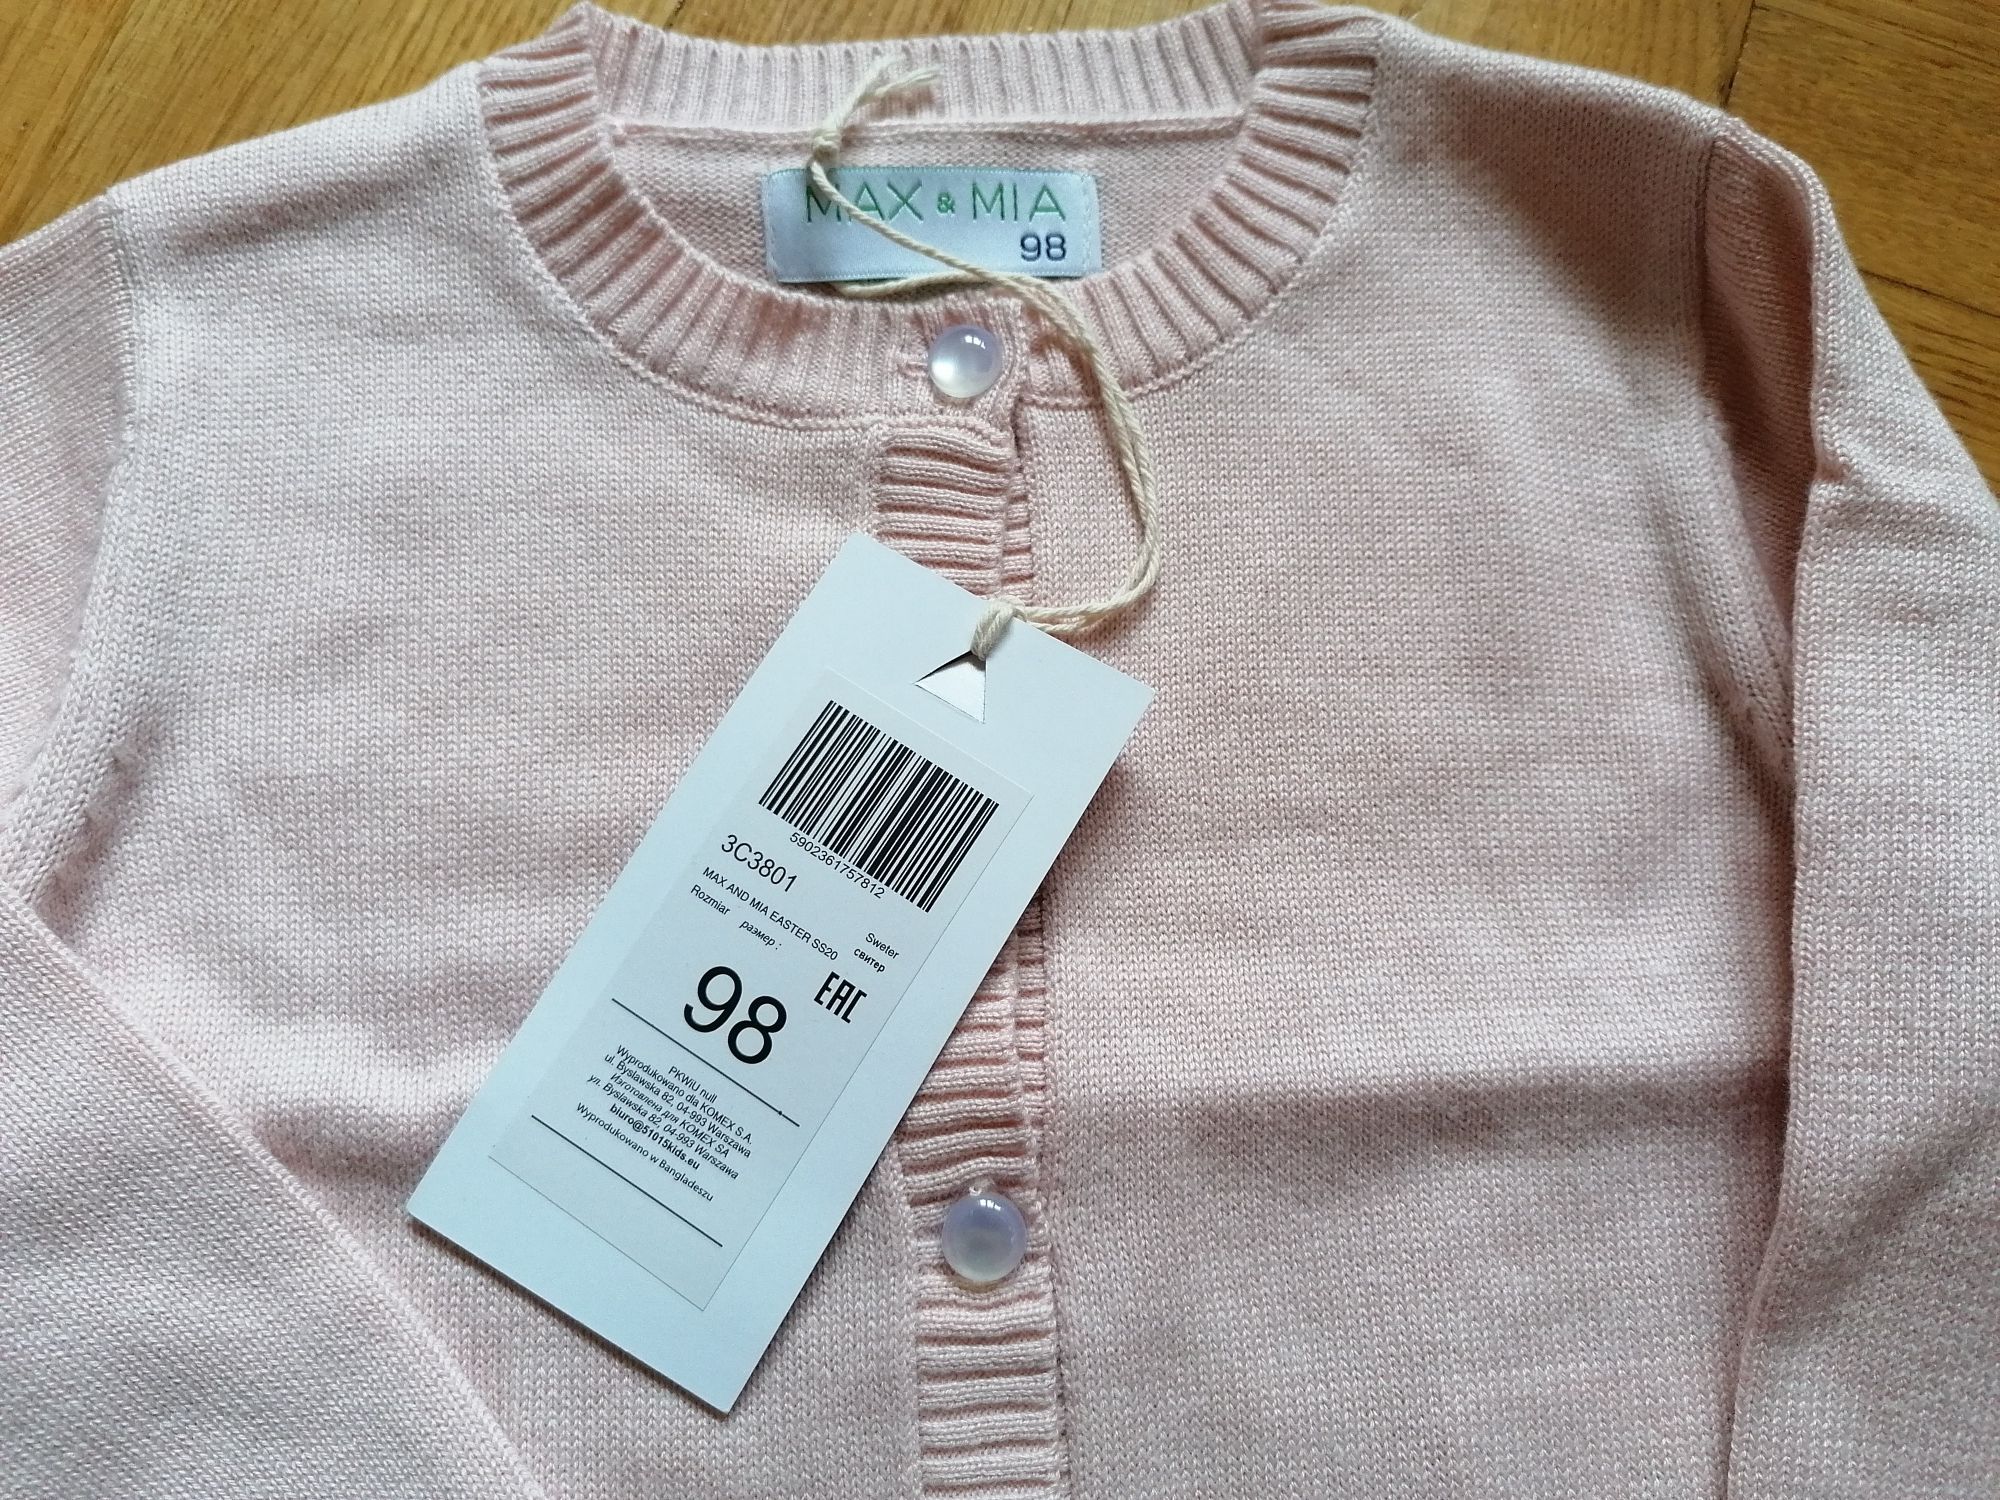 Nowy, różowy sweterek dla dziewczynki 98